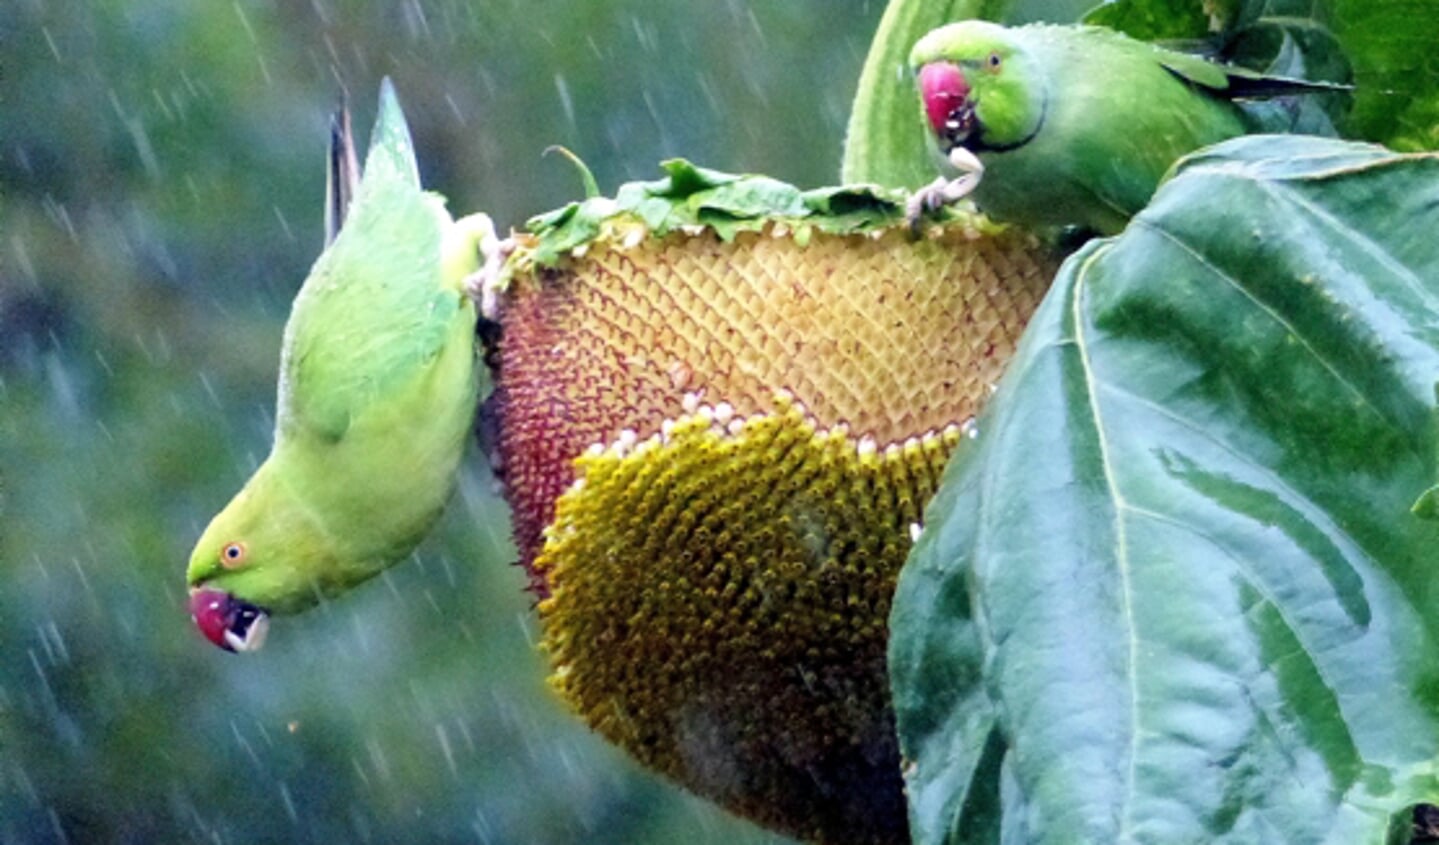 Twee halsbandparkieten eten ondanks de regen lekker door van de zonnebloemen.  Beeld: Gert Kwakernaak